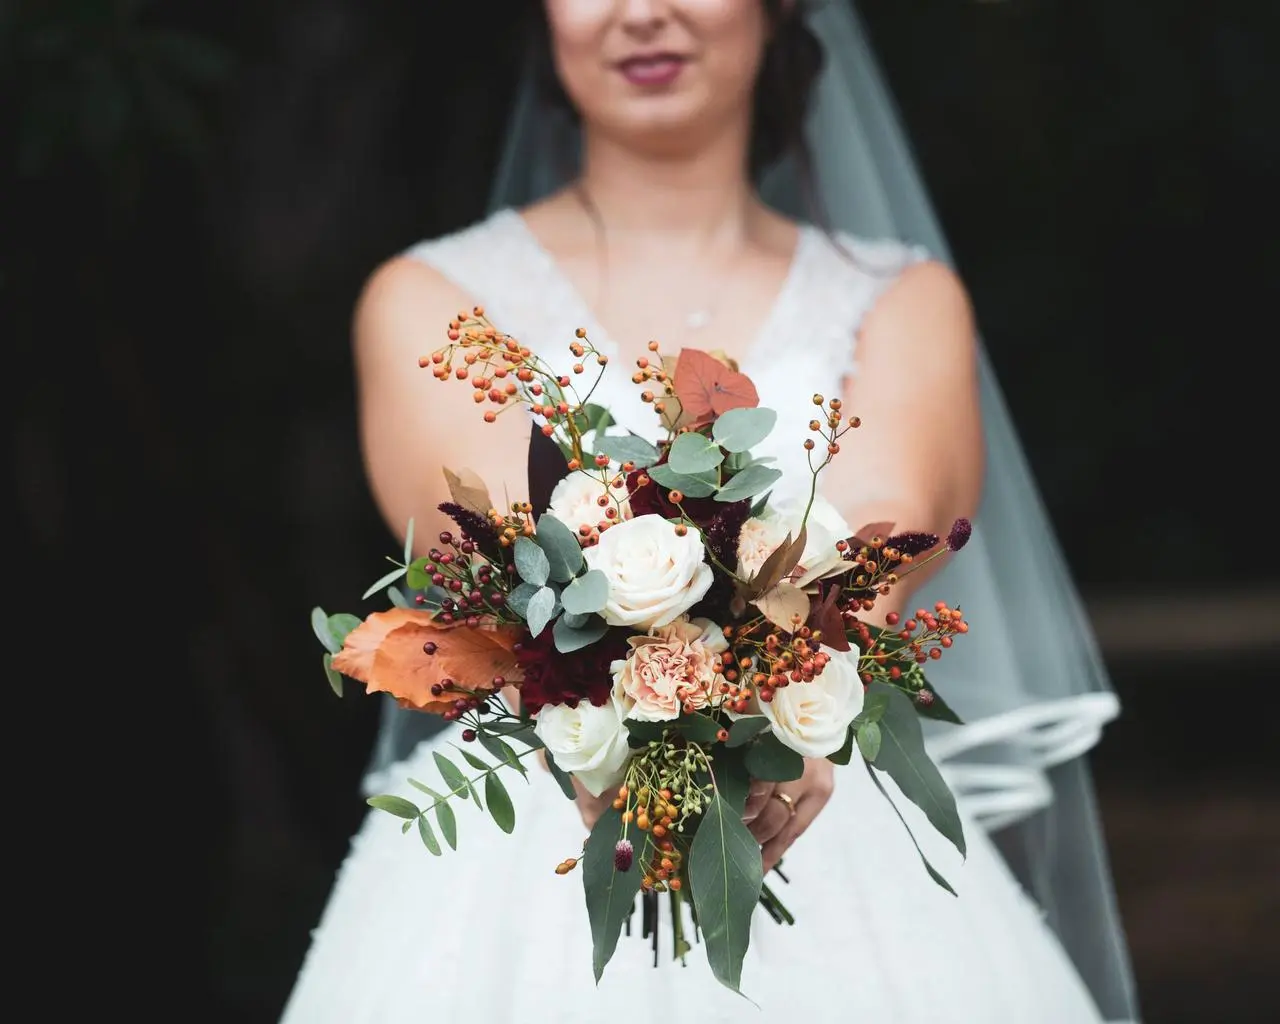 fiori autunnali matrimonio - Che fiori ci sono a ottobre per matrimonio